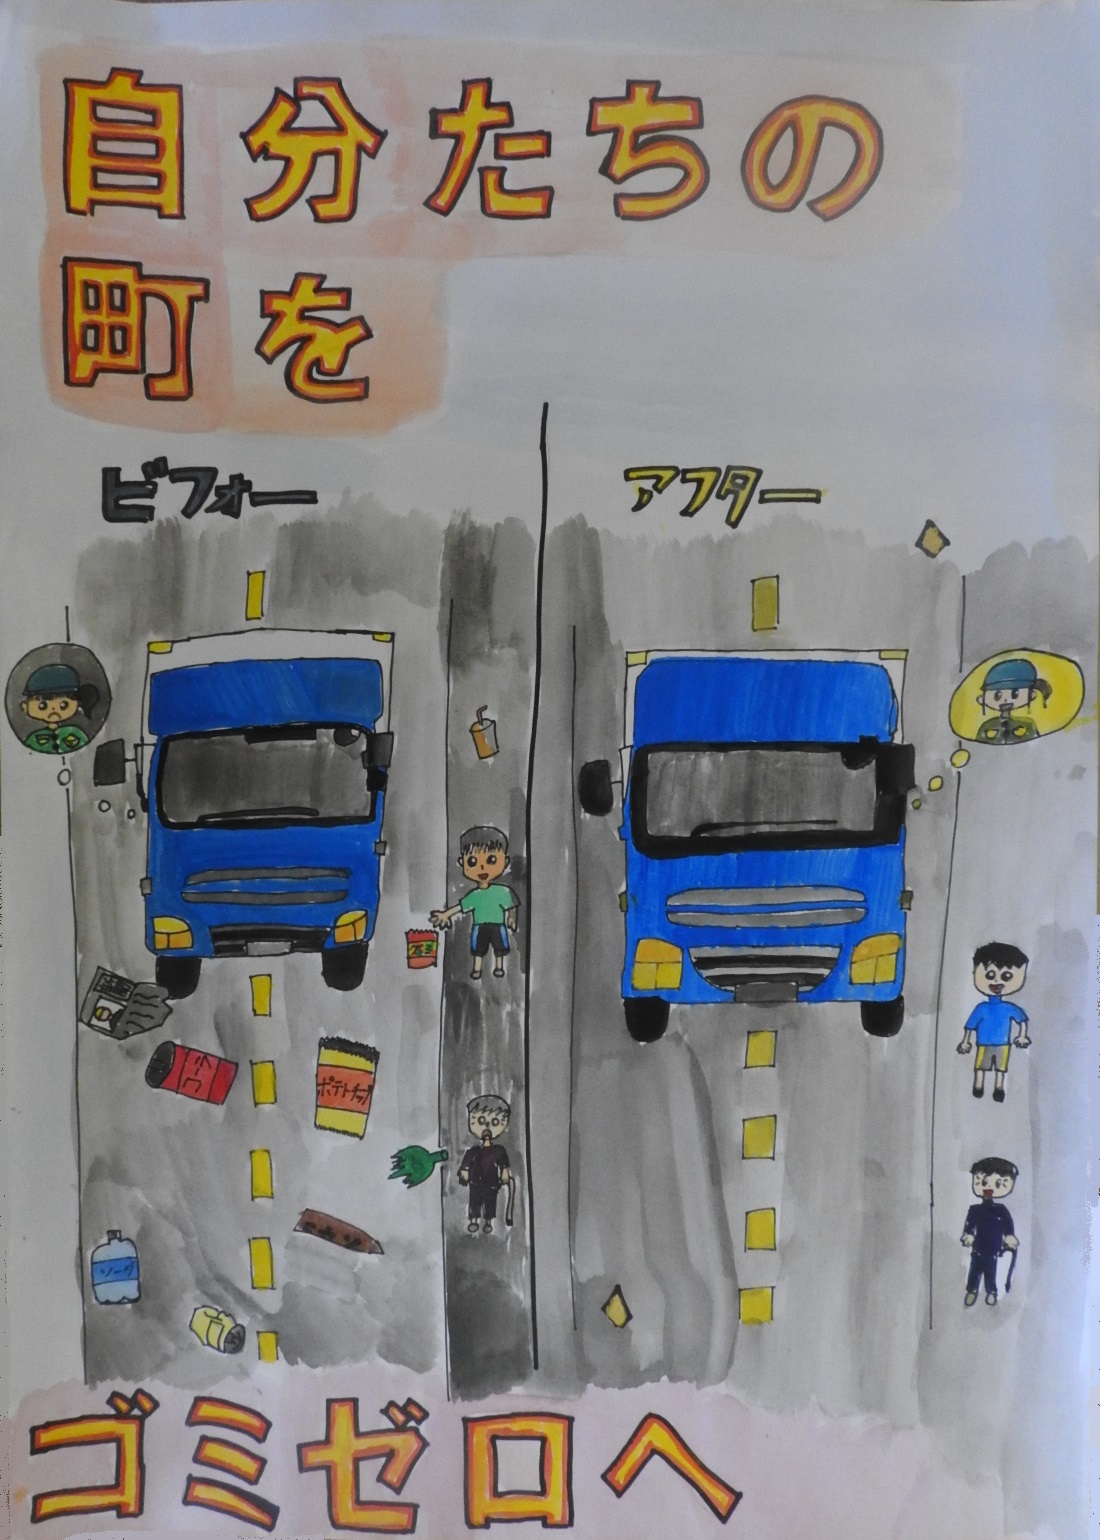 左にゴミだらけの道路でトラックが走る絵、右にゴミがなくピカピカの道路をトラックが走る絵に「自分たちの町をゴミゼロへ」と書かれたポスター